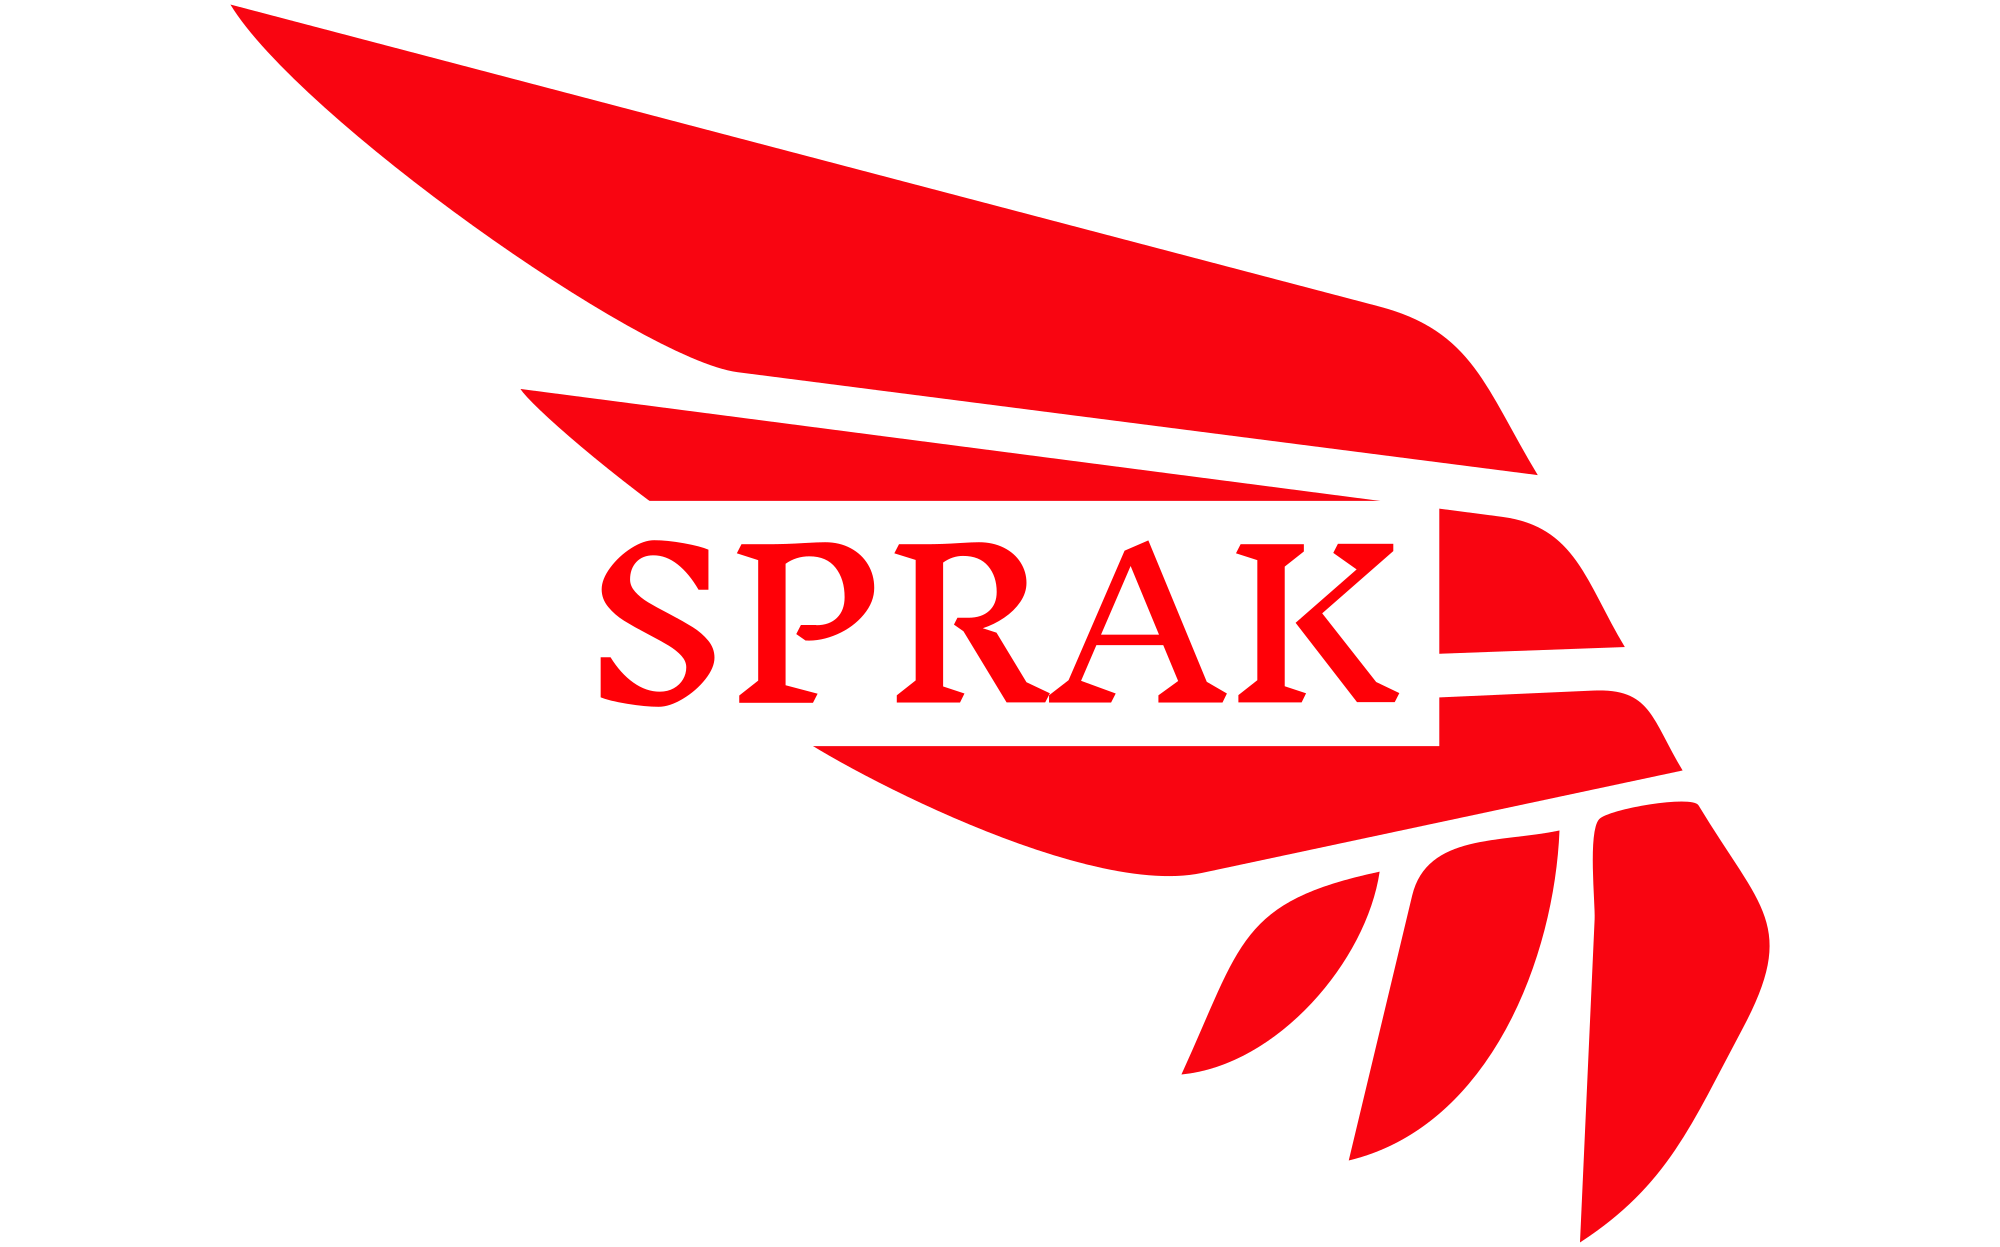 sprak-high-resolution-logo-color-on-transparent-background.png